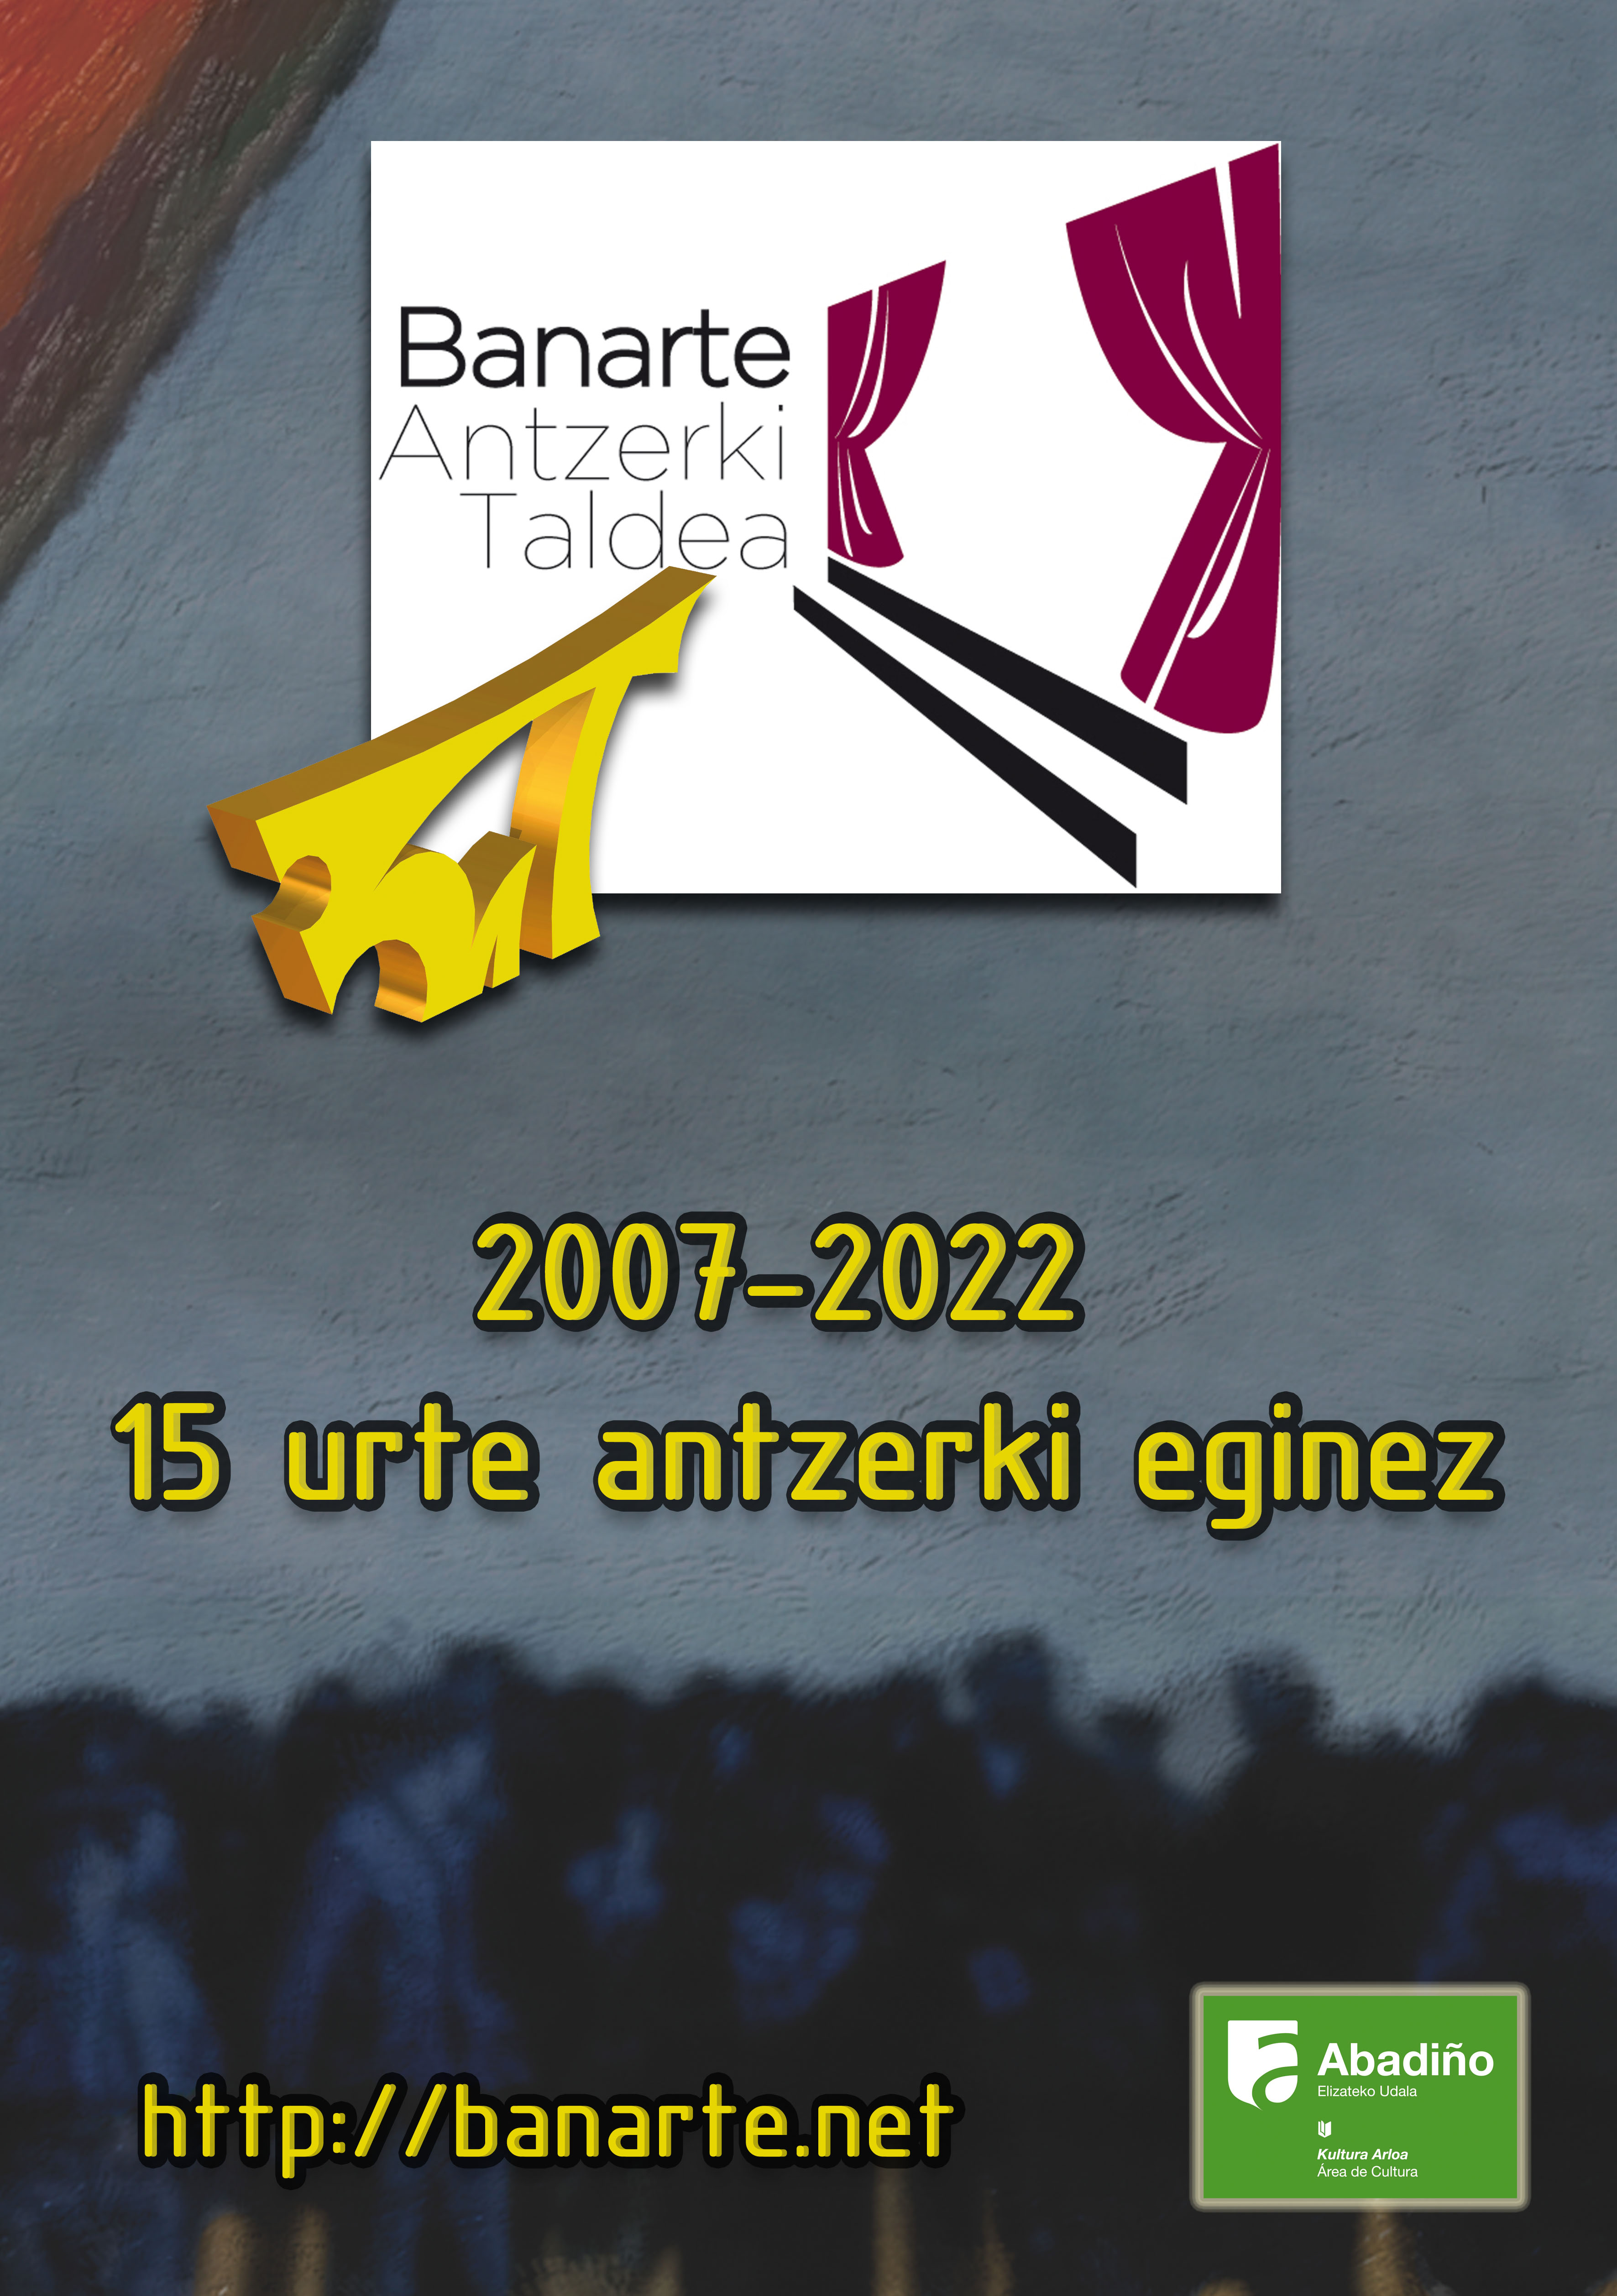 Exposición del 15º Aniversario de Banarte Antzerki Taldea